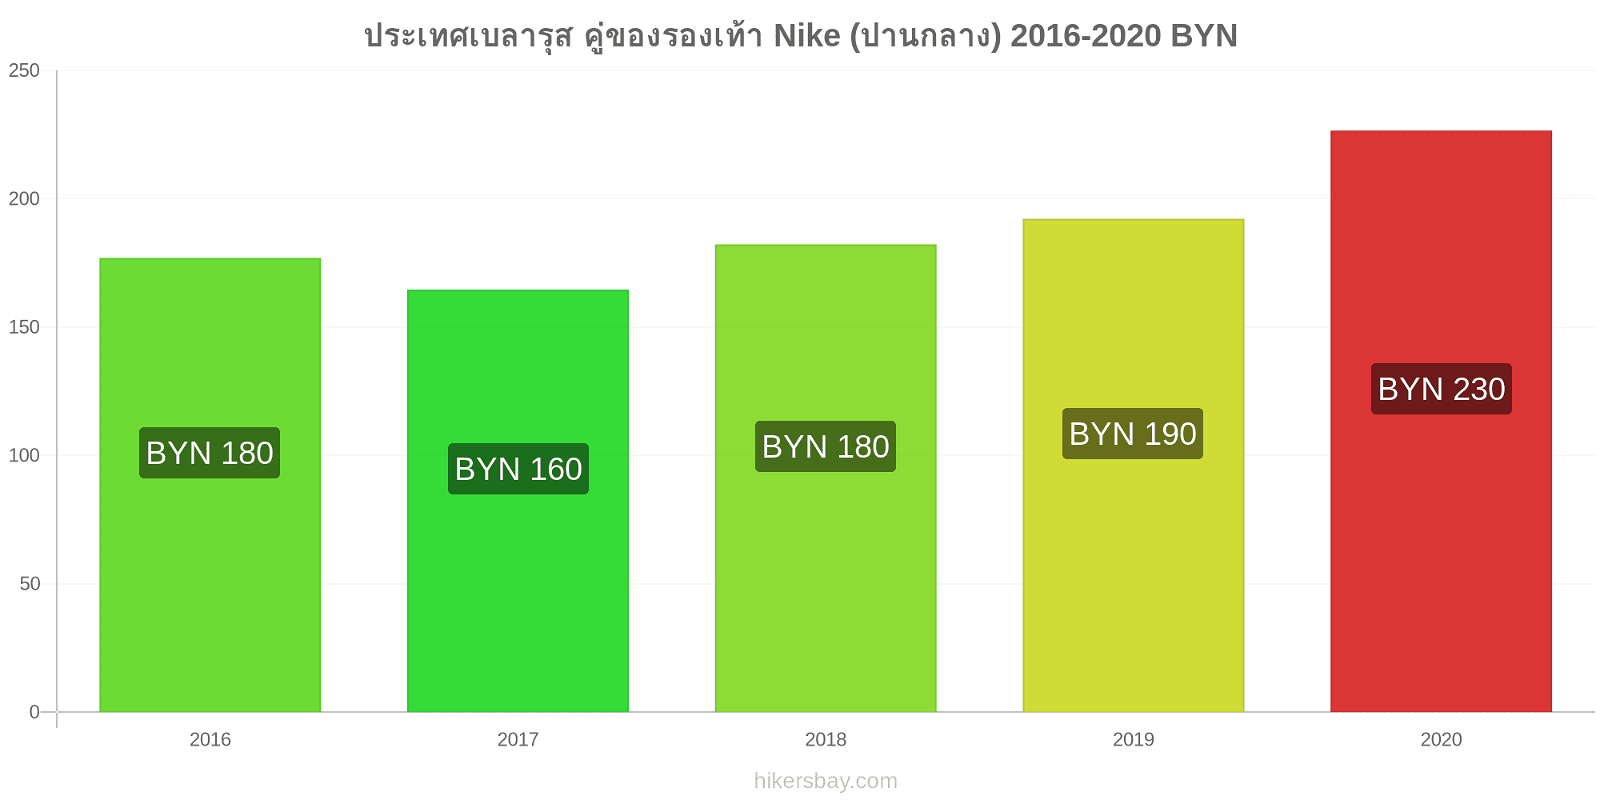 ประเทศเบลารุส การเปลี่ยนแปลงราคา คู่ของรองเท้า Nike (ปานกลาง) hikersbay.com